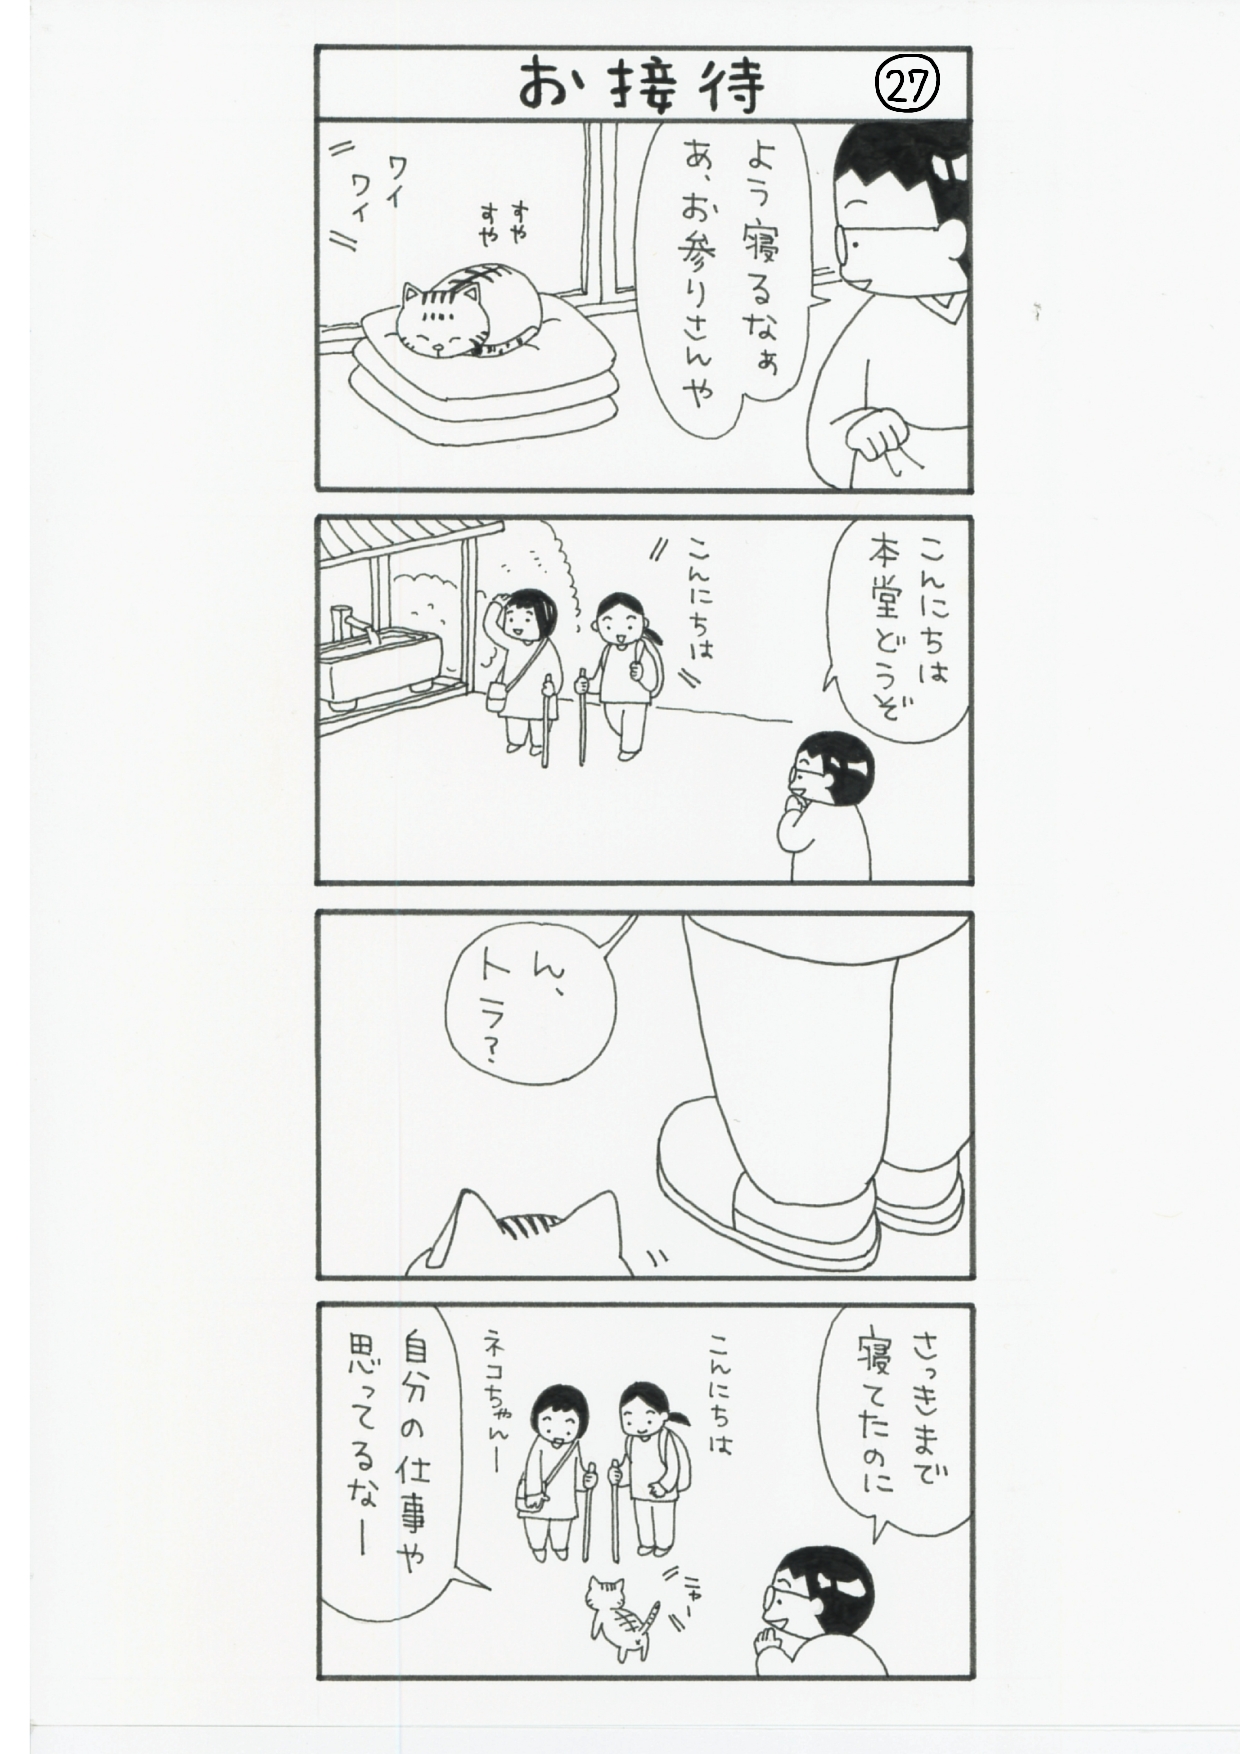 まっちゃん４コマ漫画27話